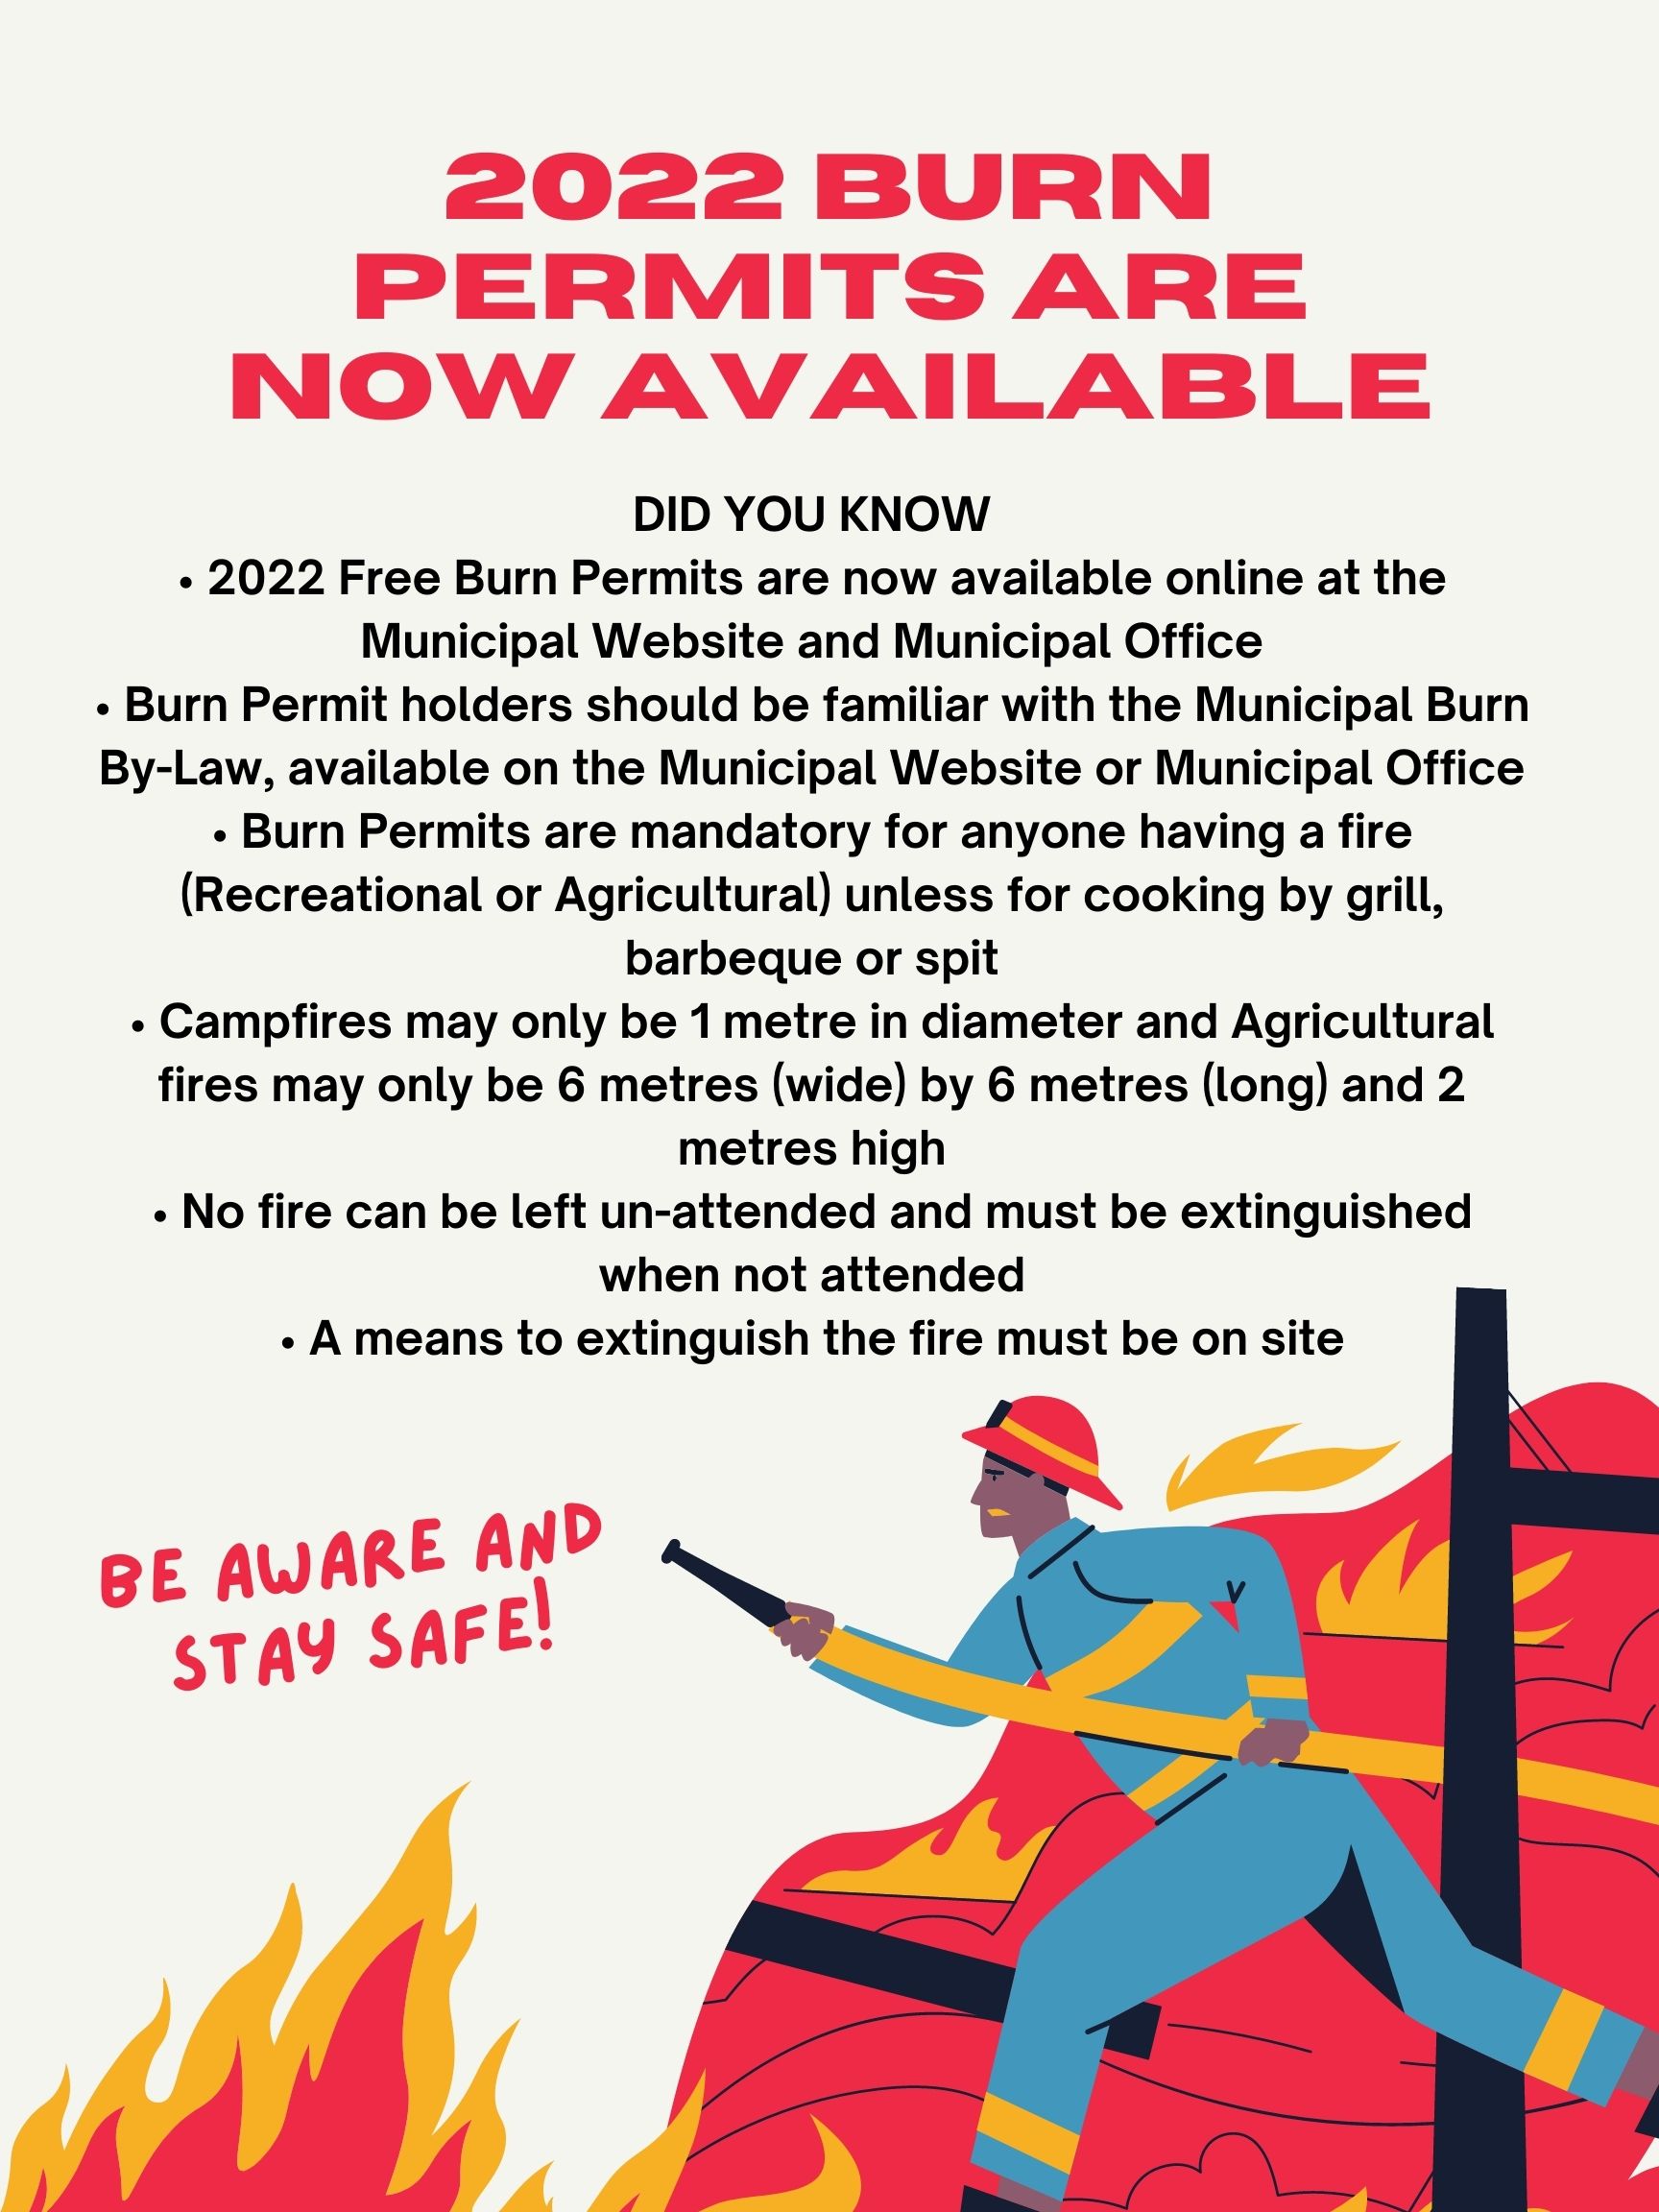 Burn Permits